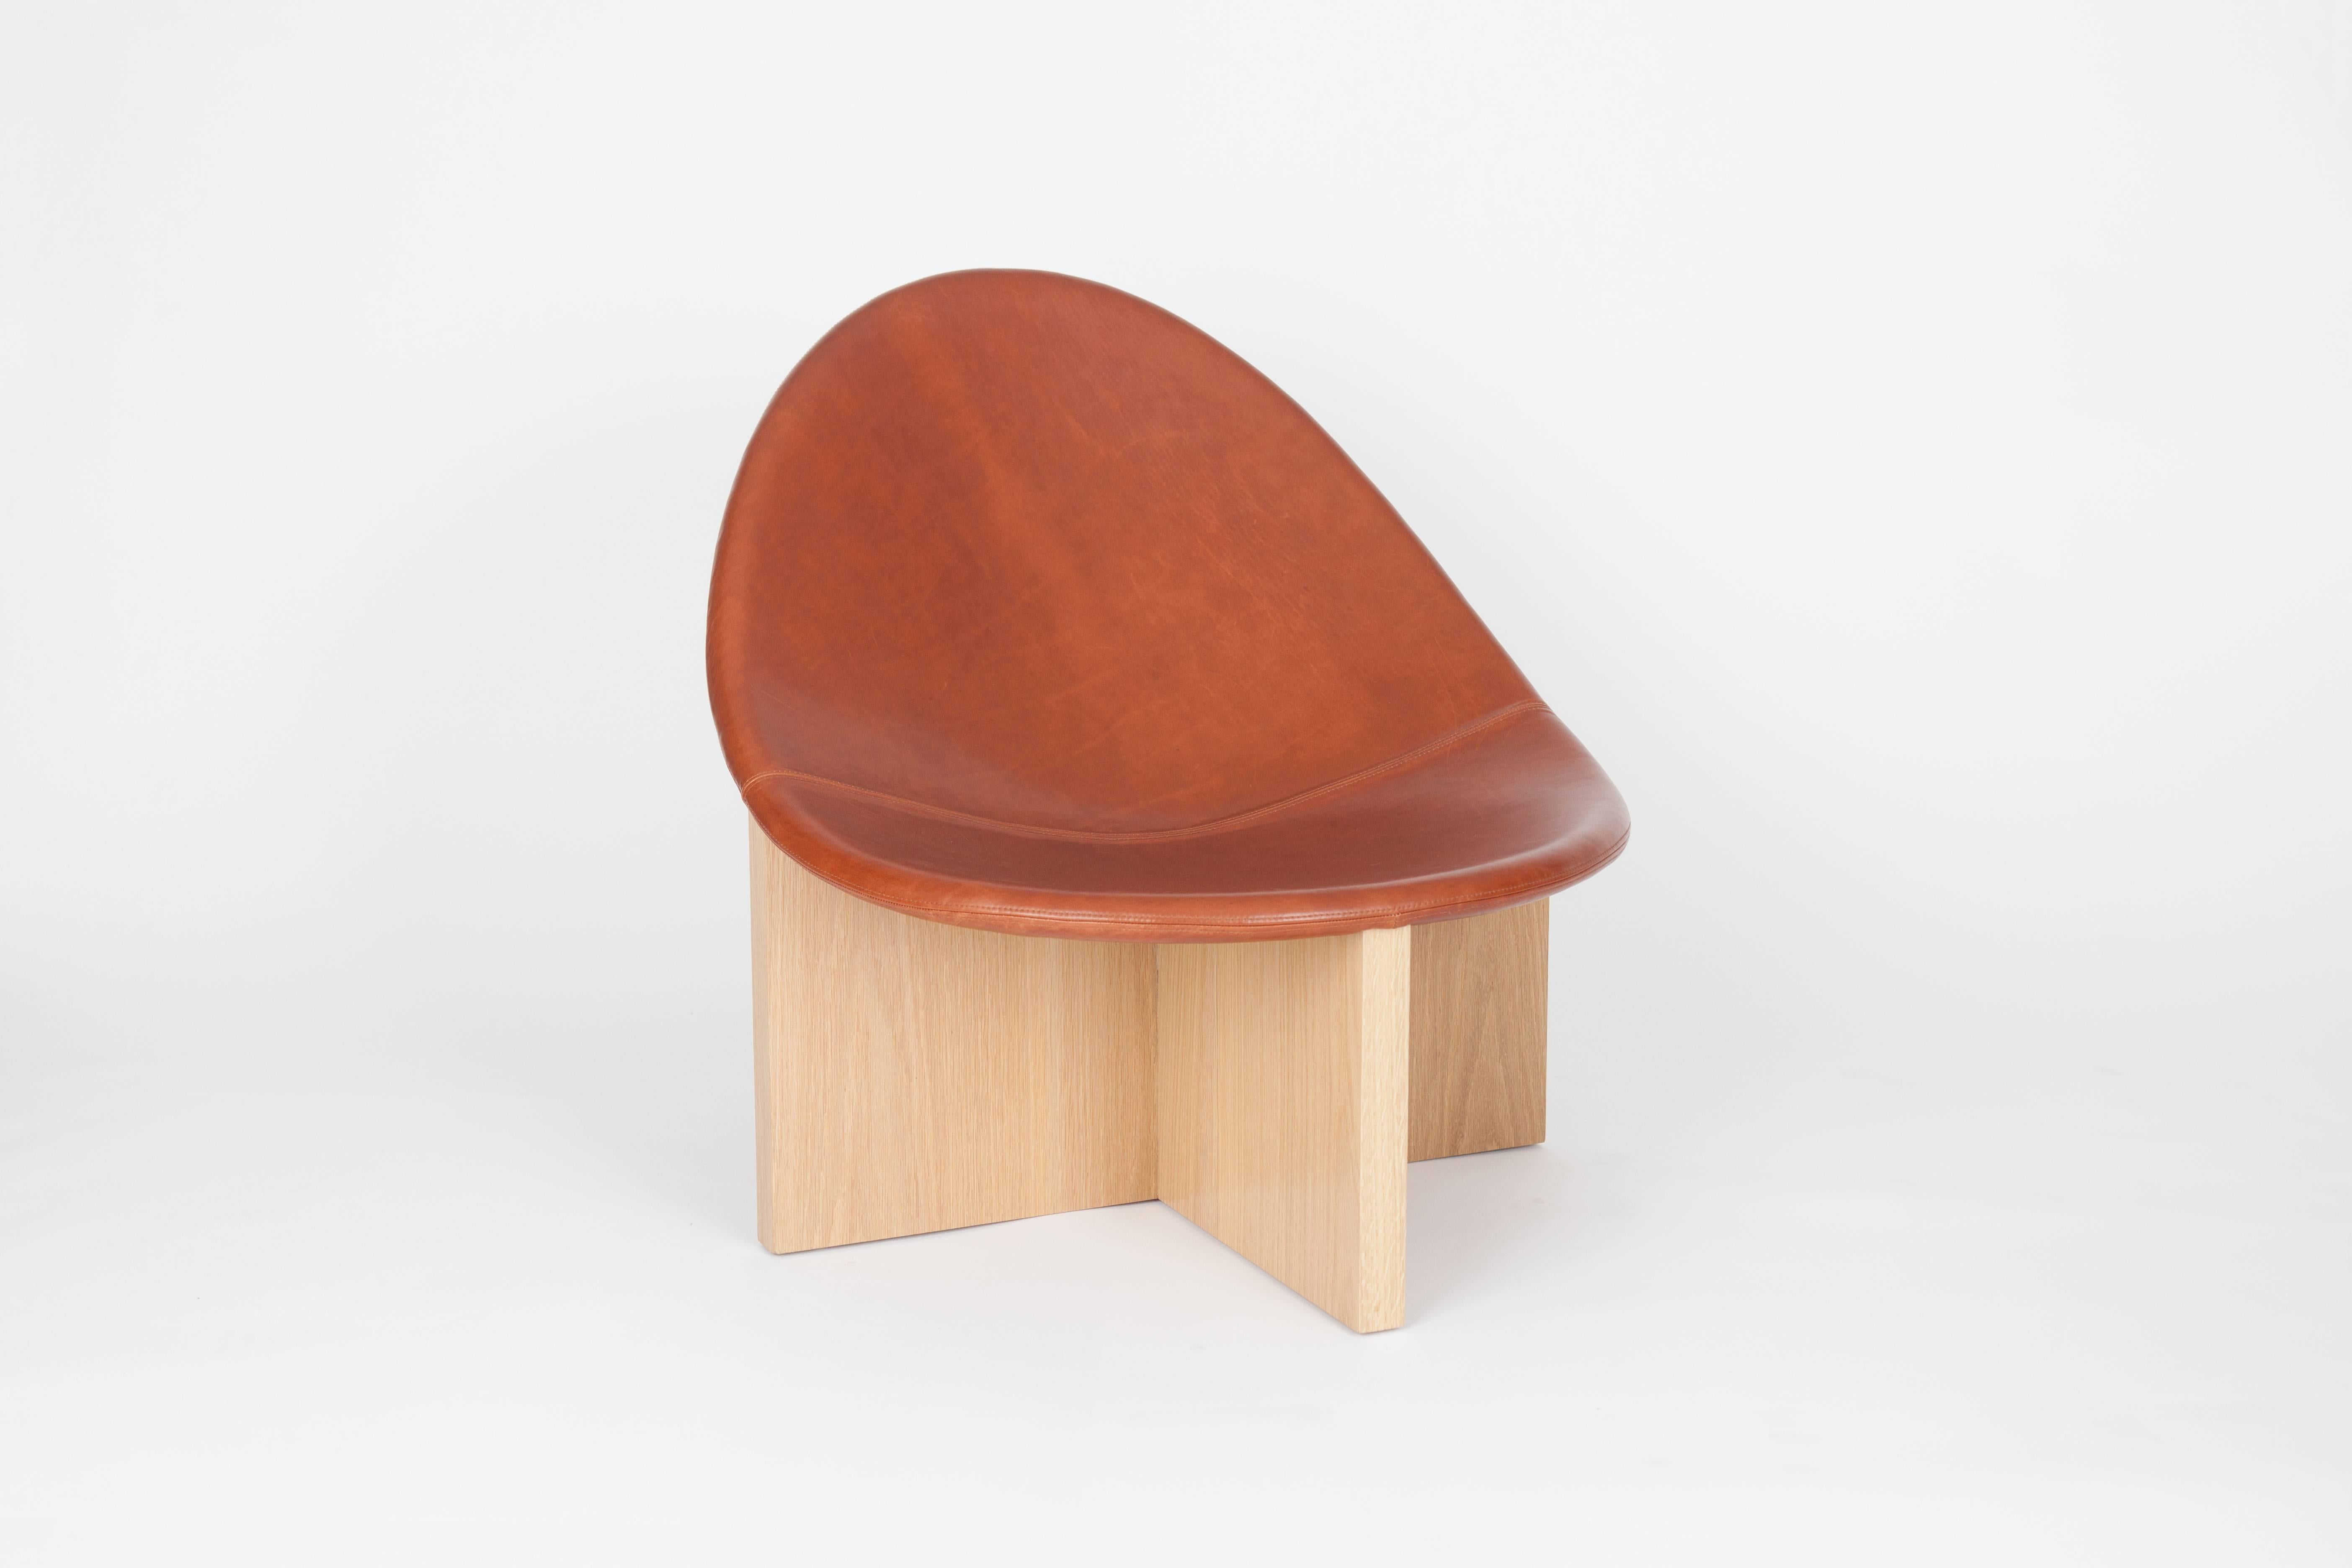 Der NIDO Chair ist das Ergebnis eines Spiels mit der Gegenüberstellung von Formen. Die eiförmige Form des ledergepolsterten Holzsitzes, der sich in das kreuzförmige Massivholzgestell einfügt, gibt ihm den Namen NIDO, was im Spanischen Nest bedeutet.